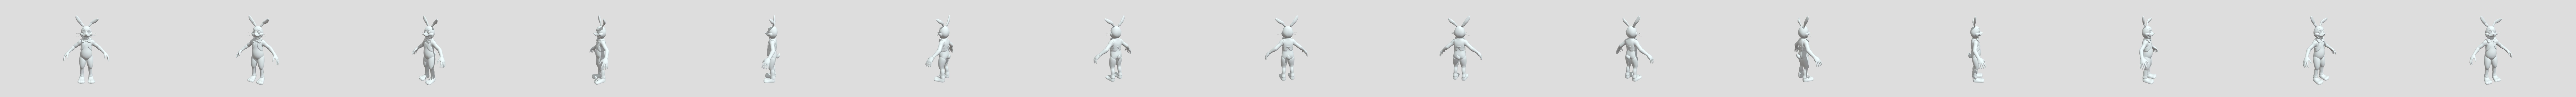 Glitchtrap 3D models - Sketchfab